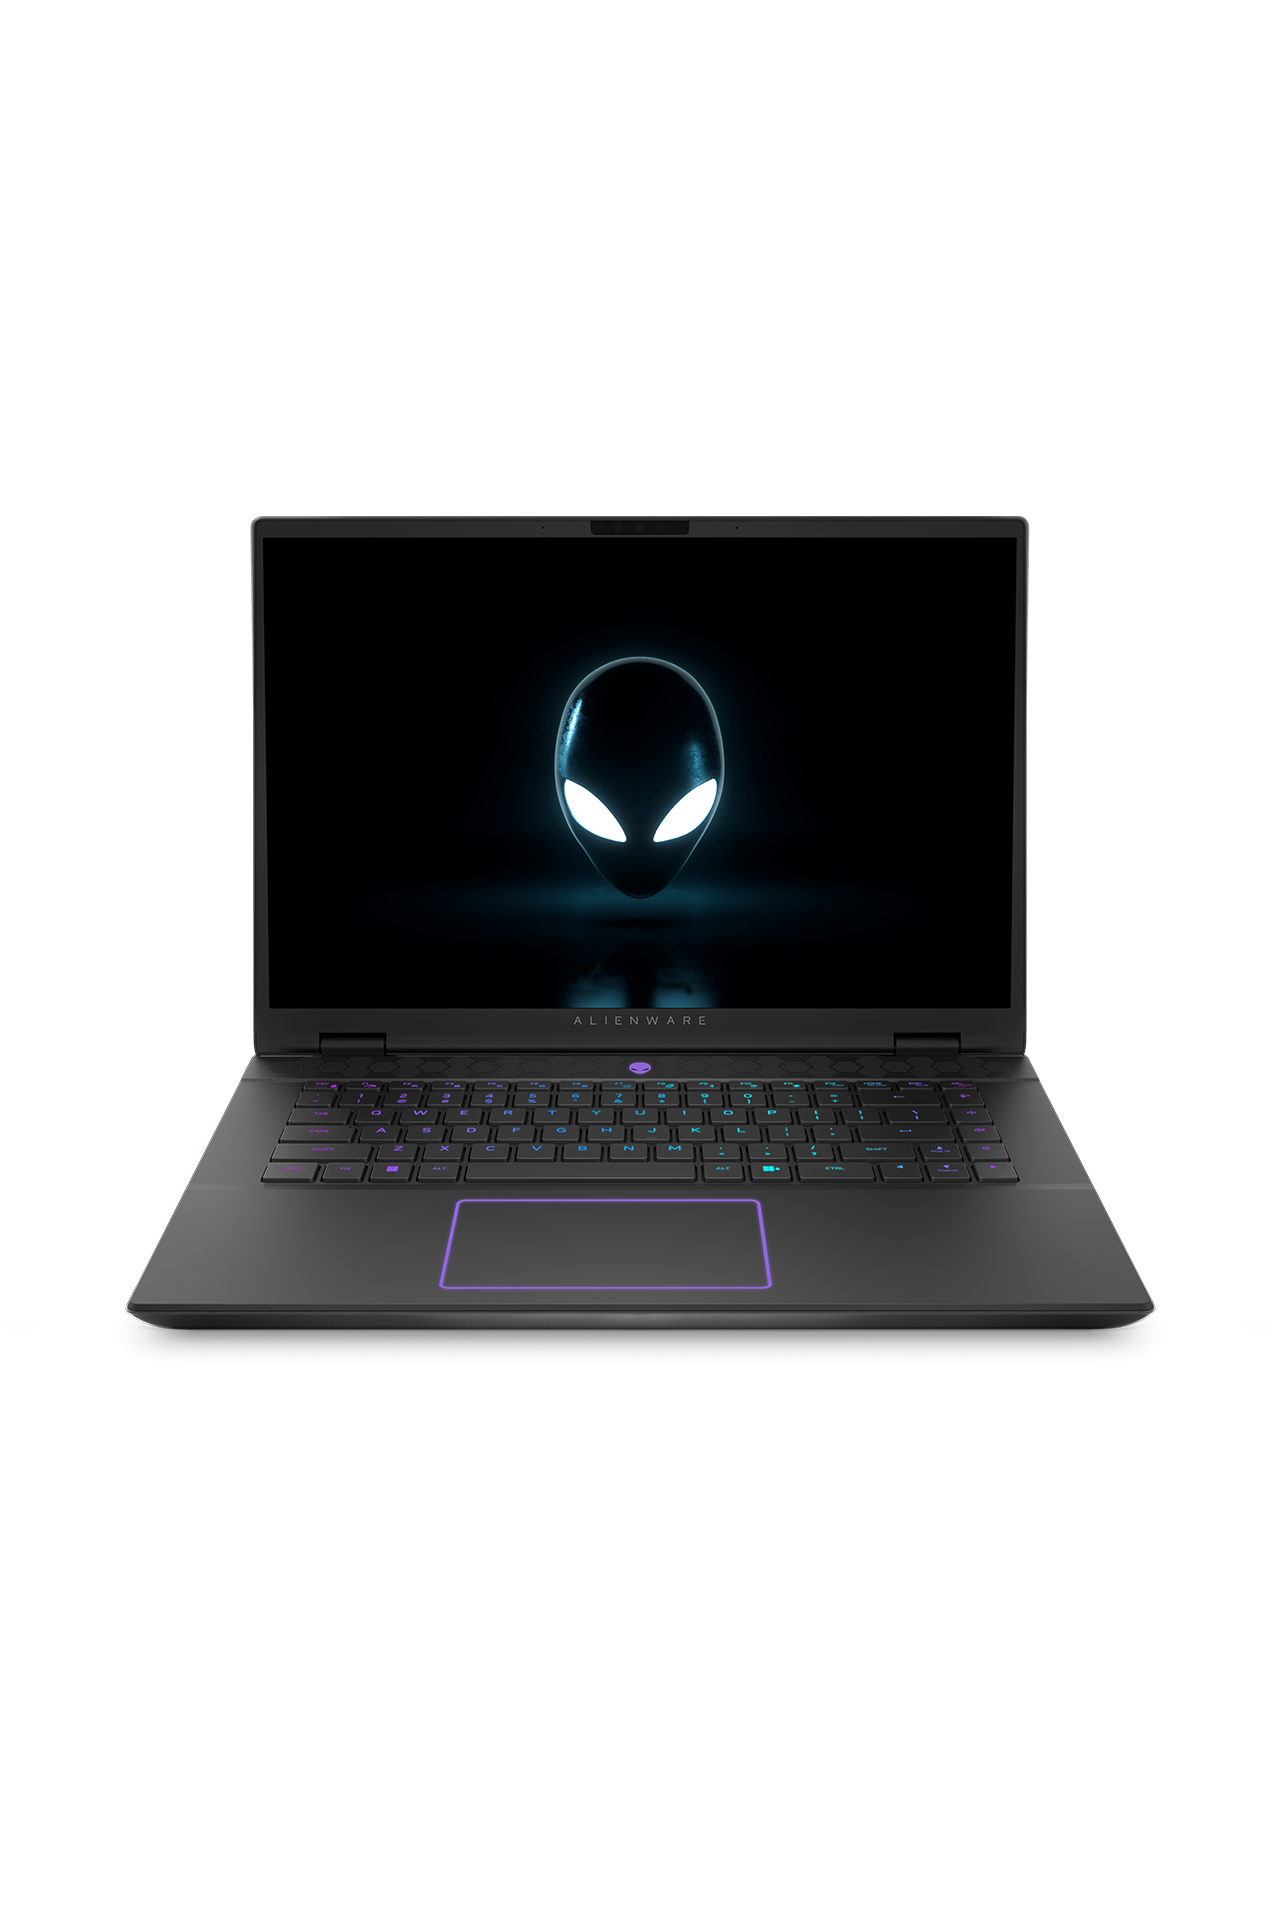 Alienware Laptop